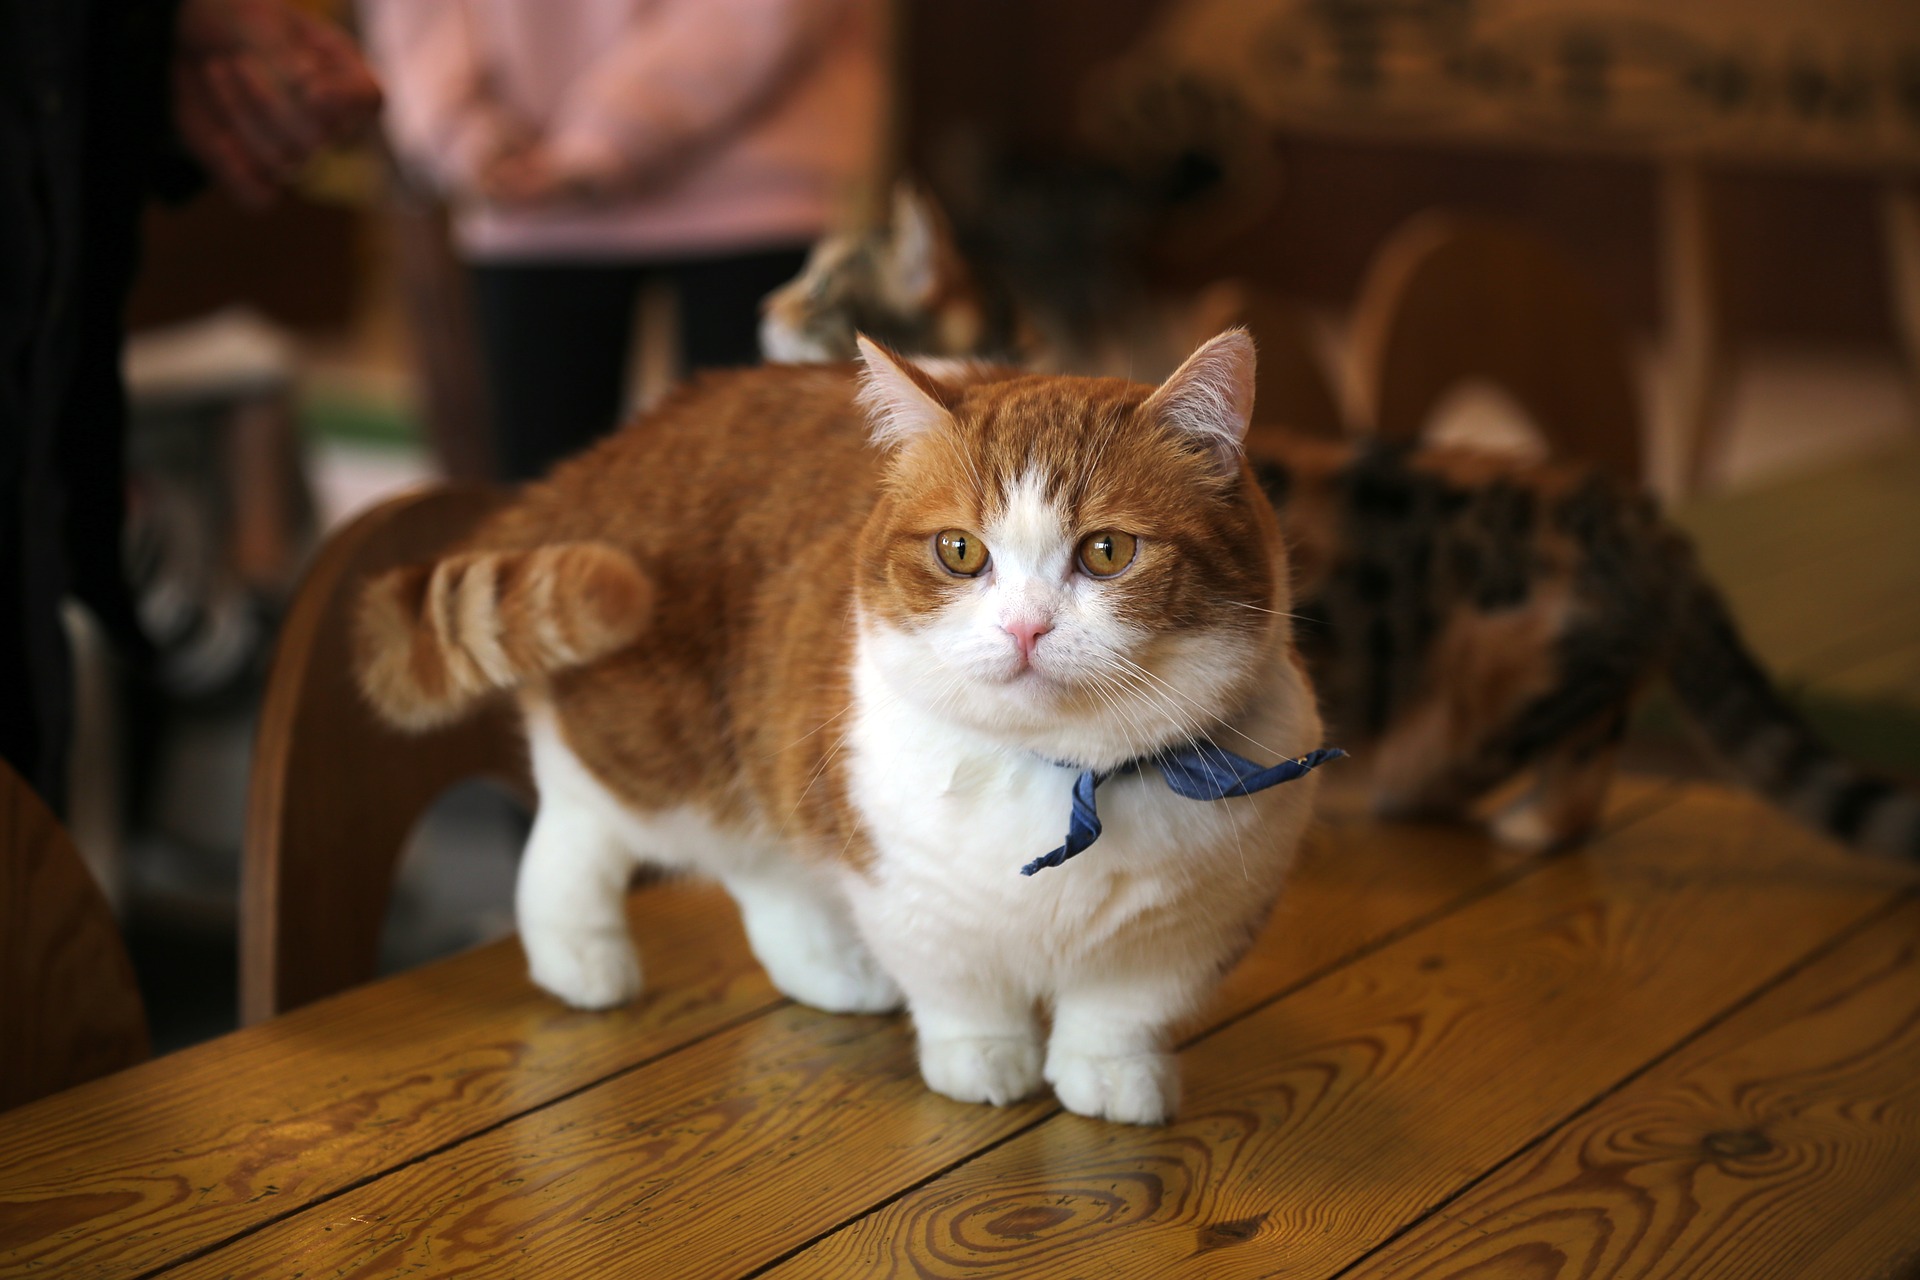 orange tabby munchkin cat